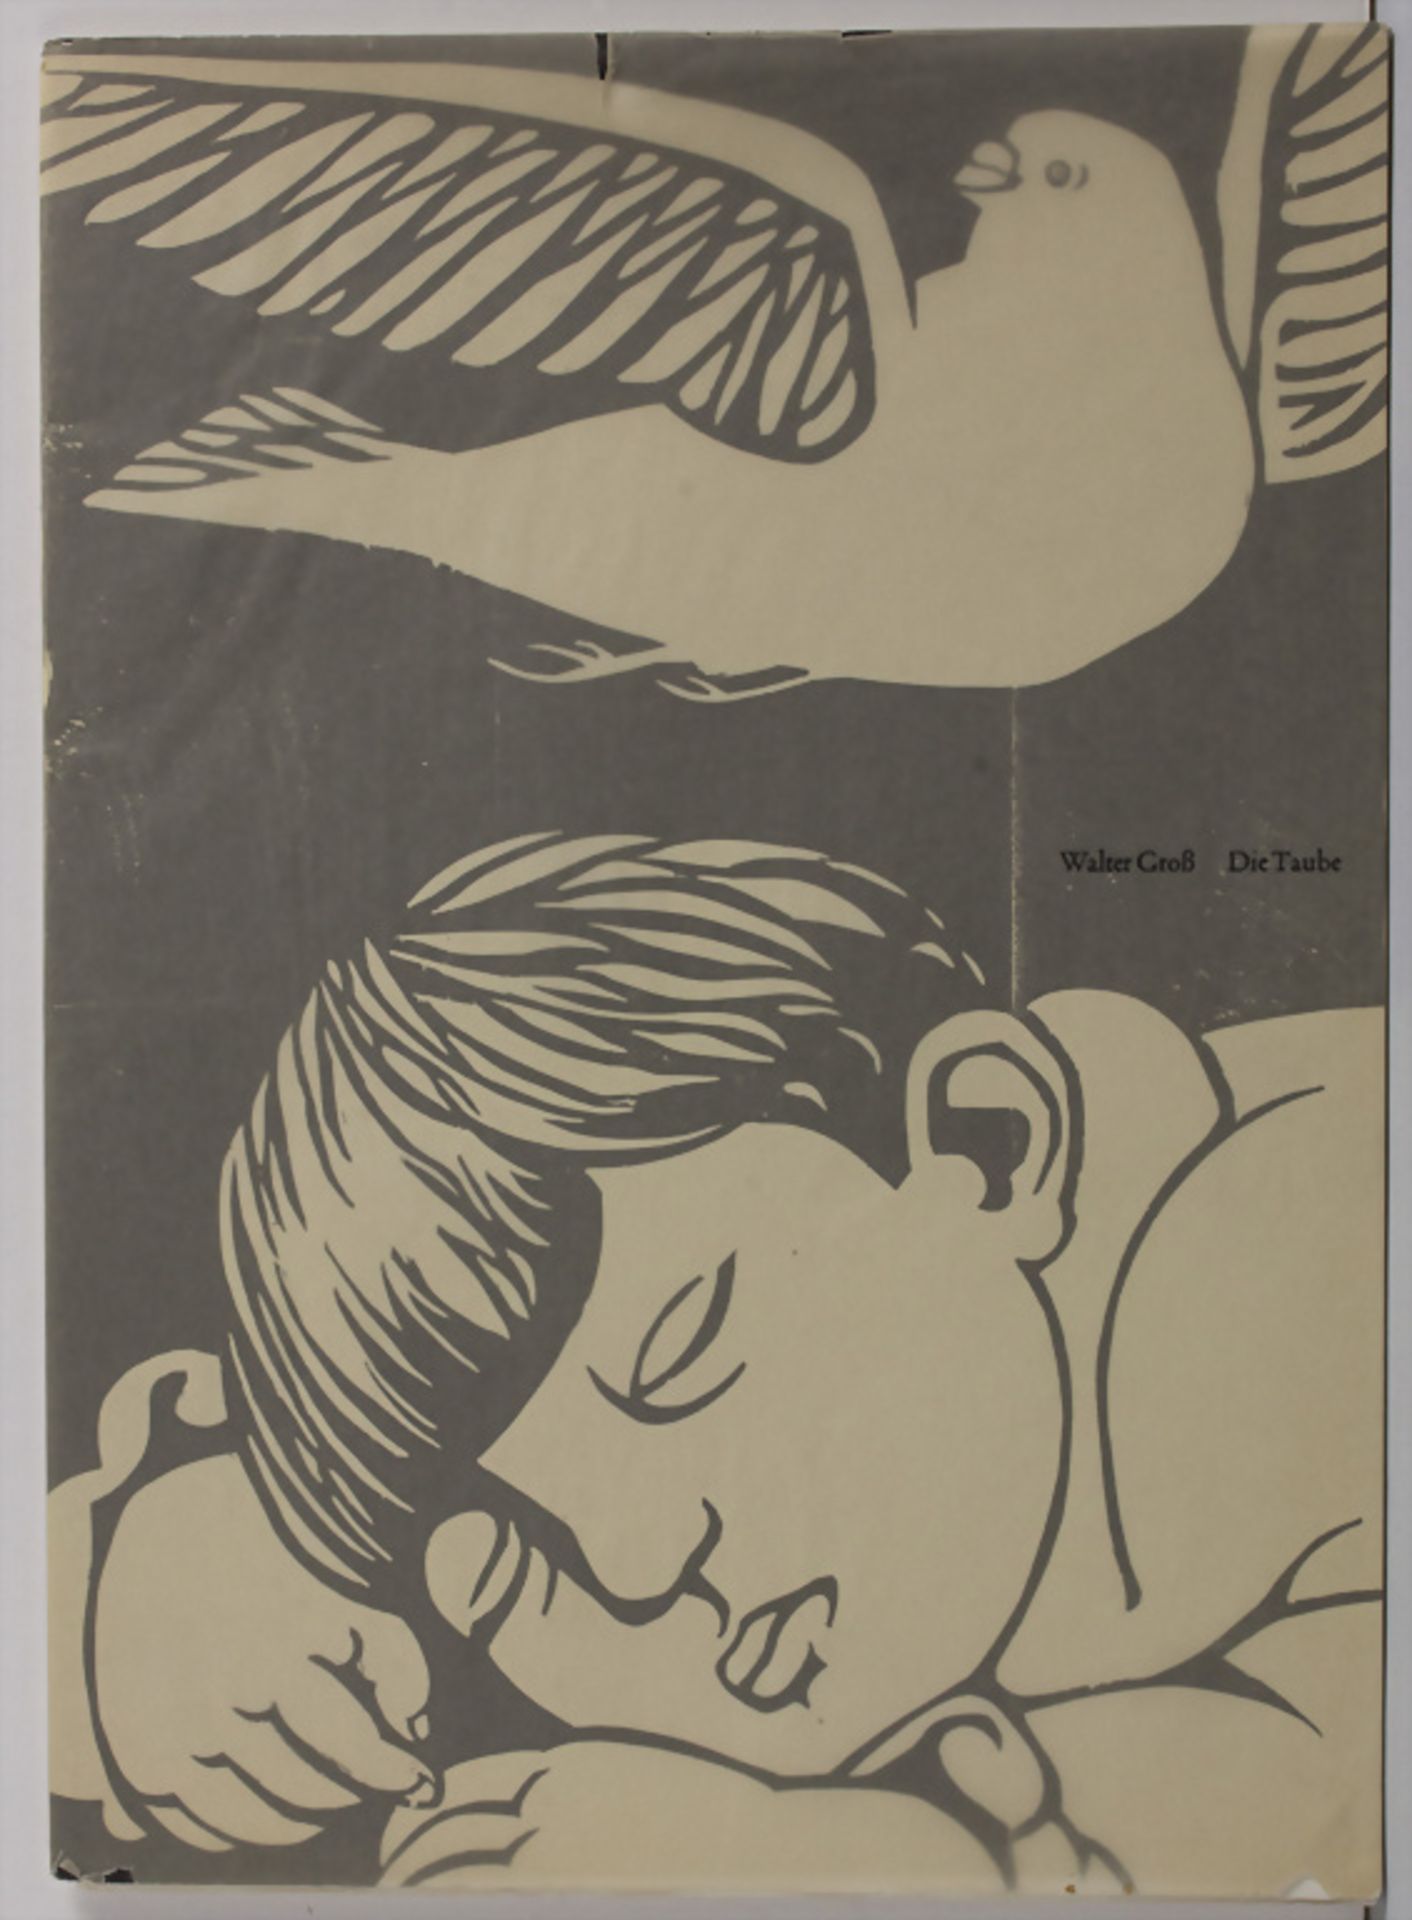 Poesie, Walter Groß: Die Taube, hg. von Max Bollinger, Sins, 1956